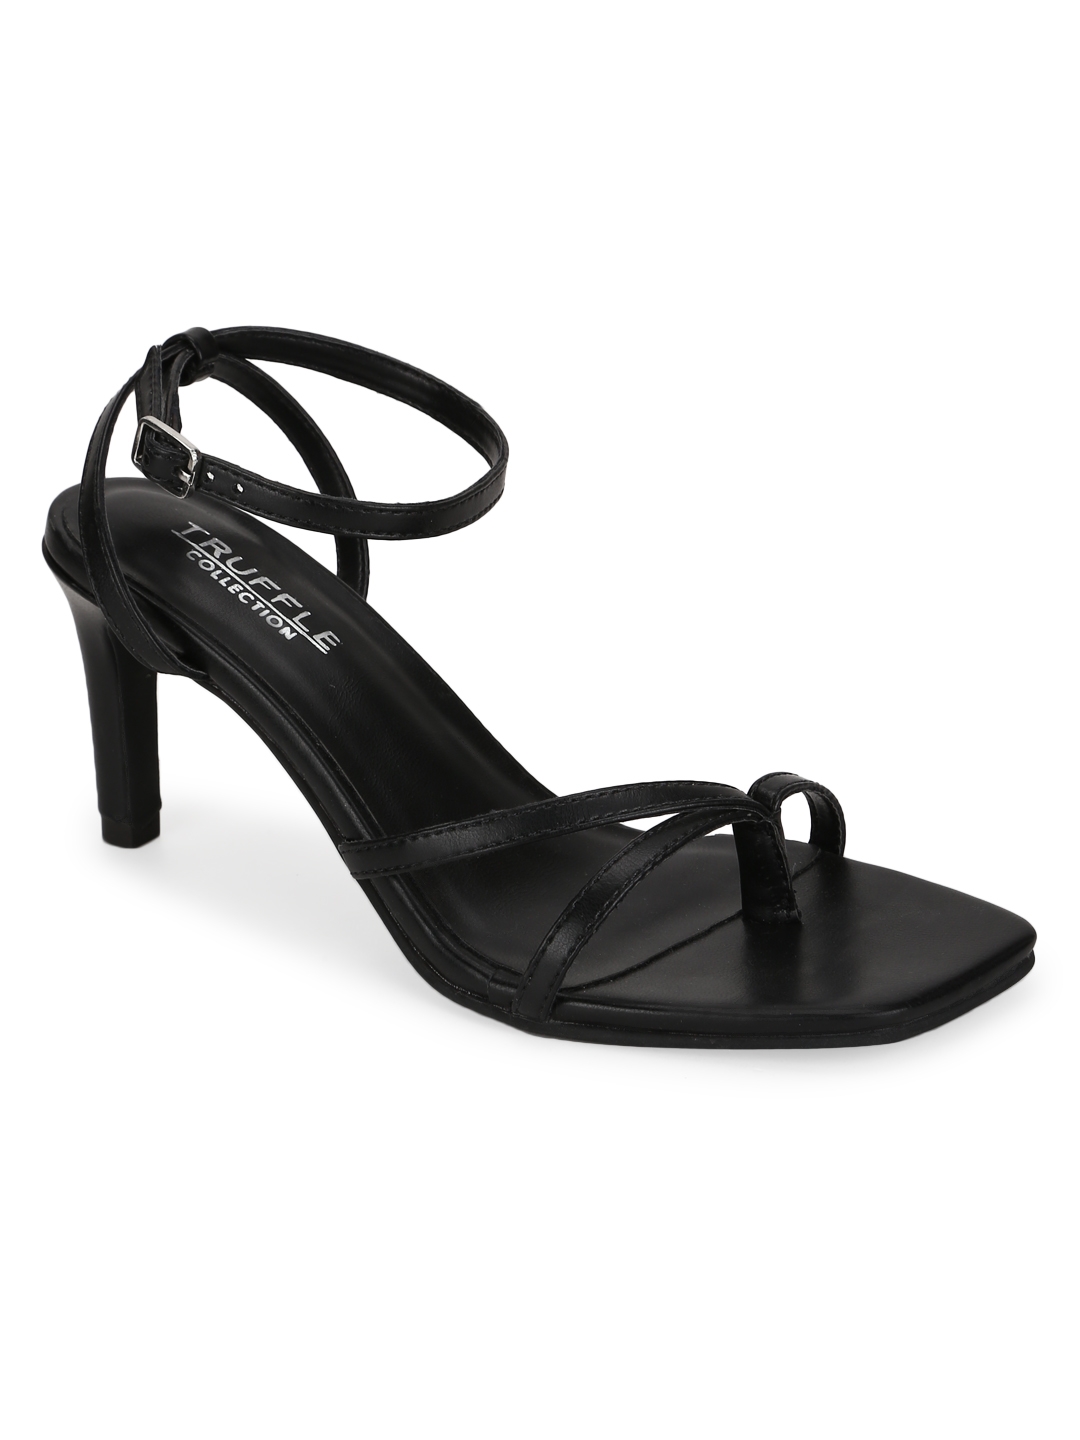 Black PU Strappy Stiletto Sandals